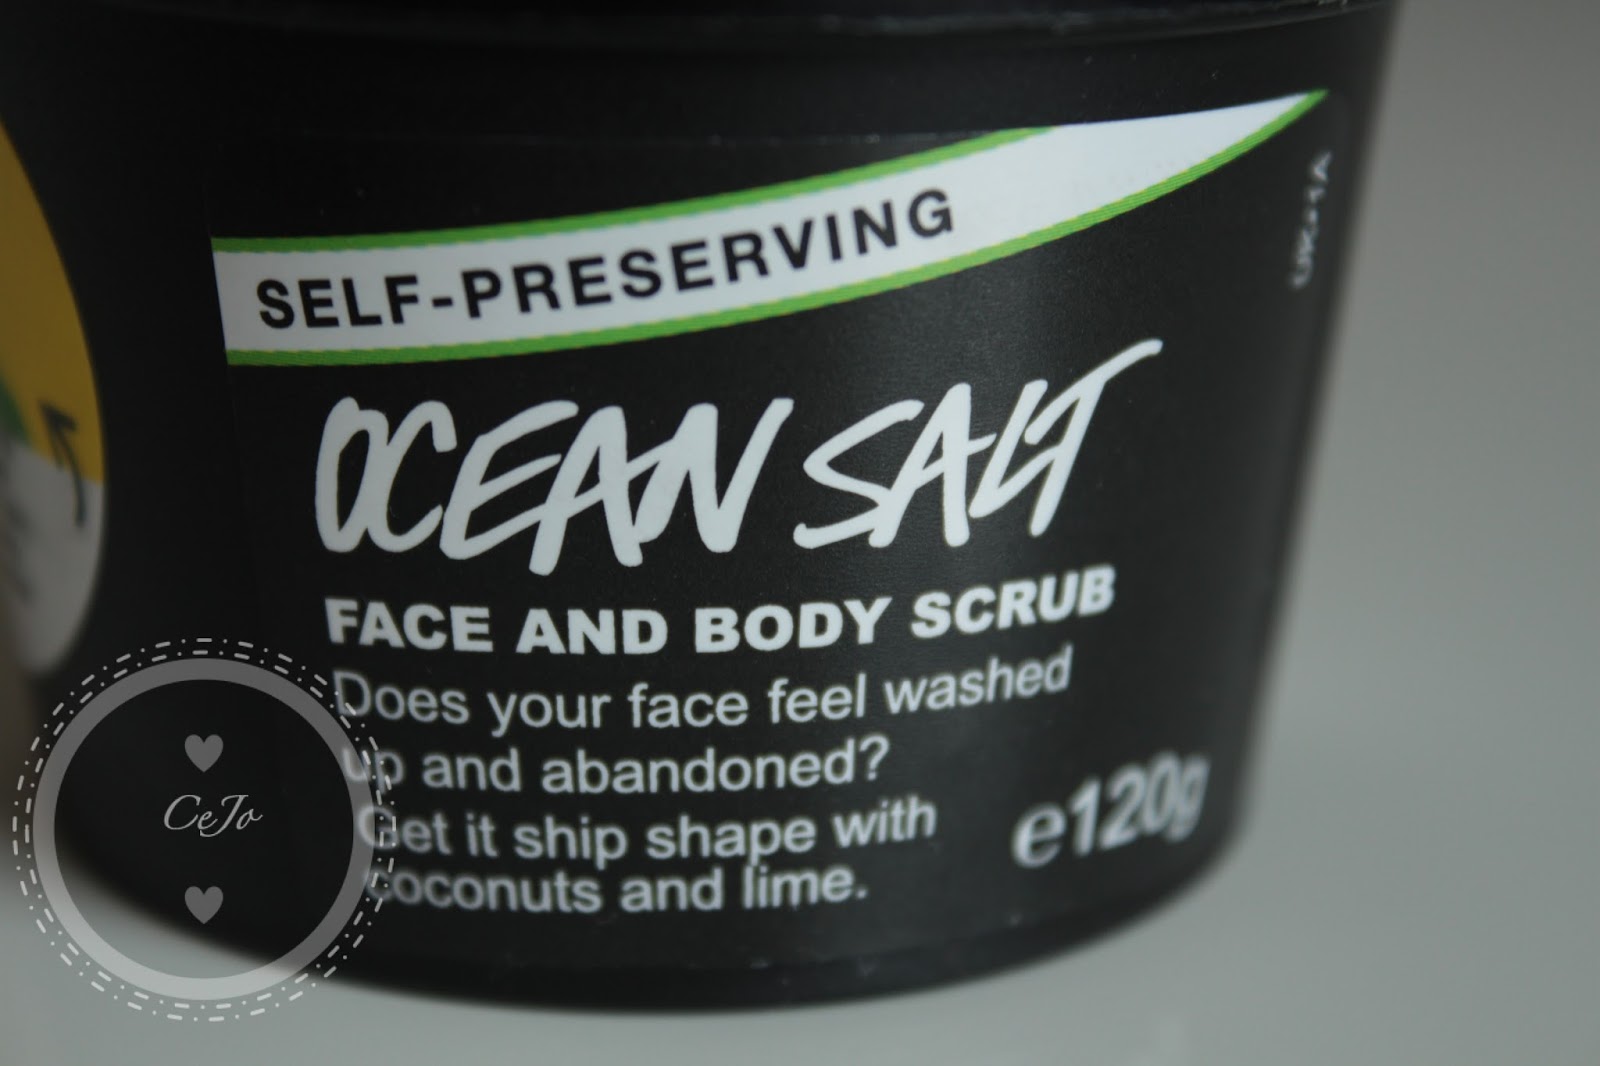 self preserving lush ocean salt review